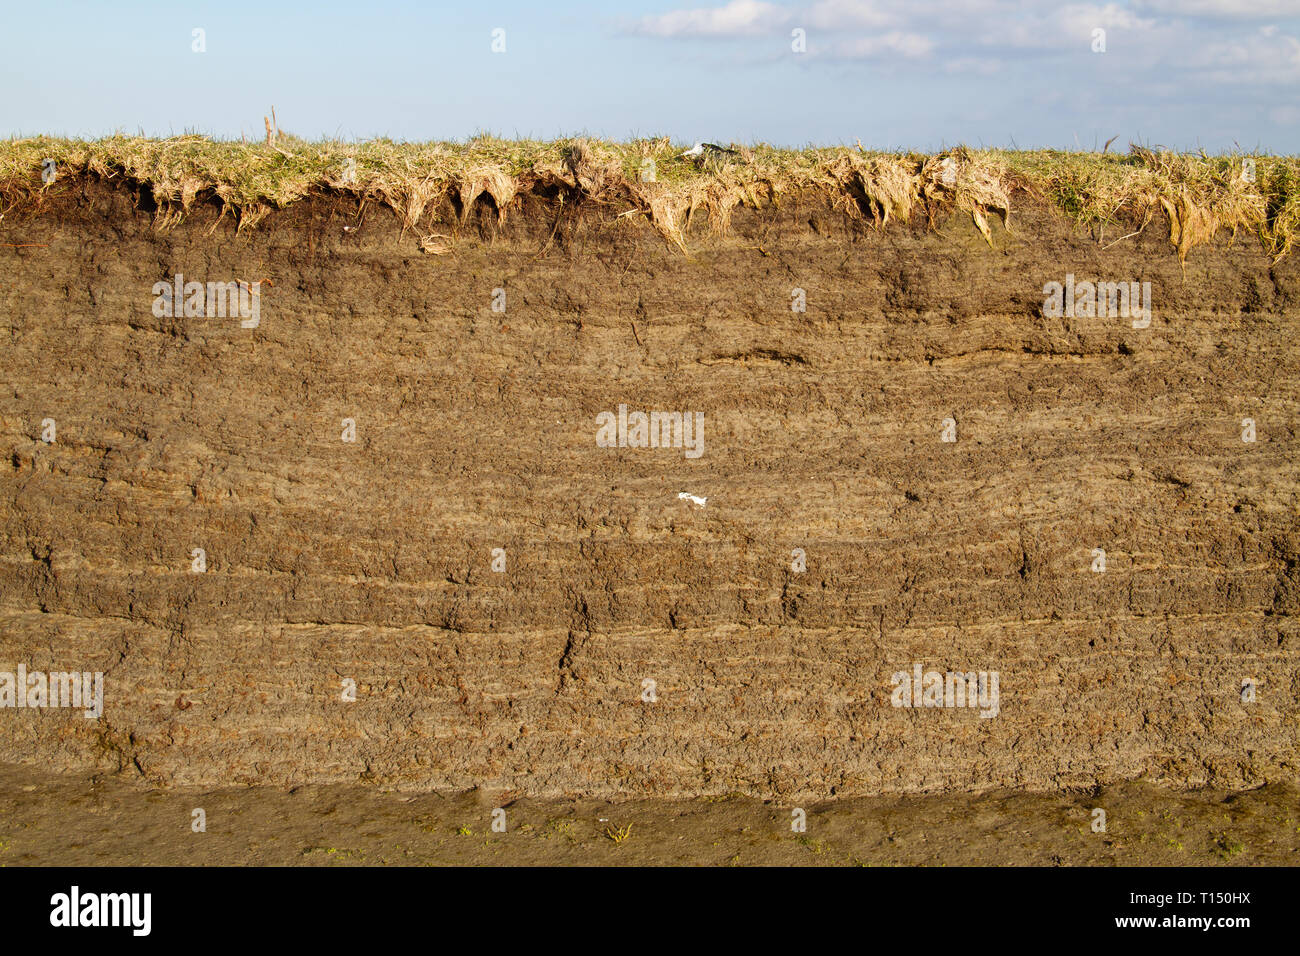 Gezeiten marsh Bodenprofil in der cutbank von einem Bach, das Ergebnis der Akkretion und Erosion, Schichten von Lehm mit kleinen Fragmenten des Tanks Stockfoto